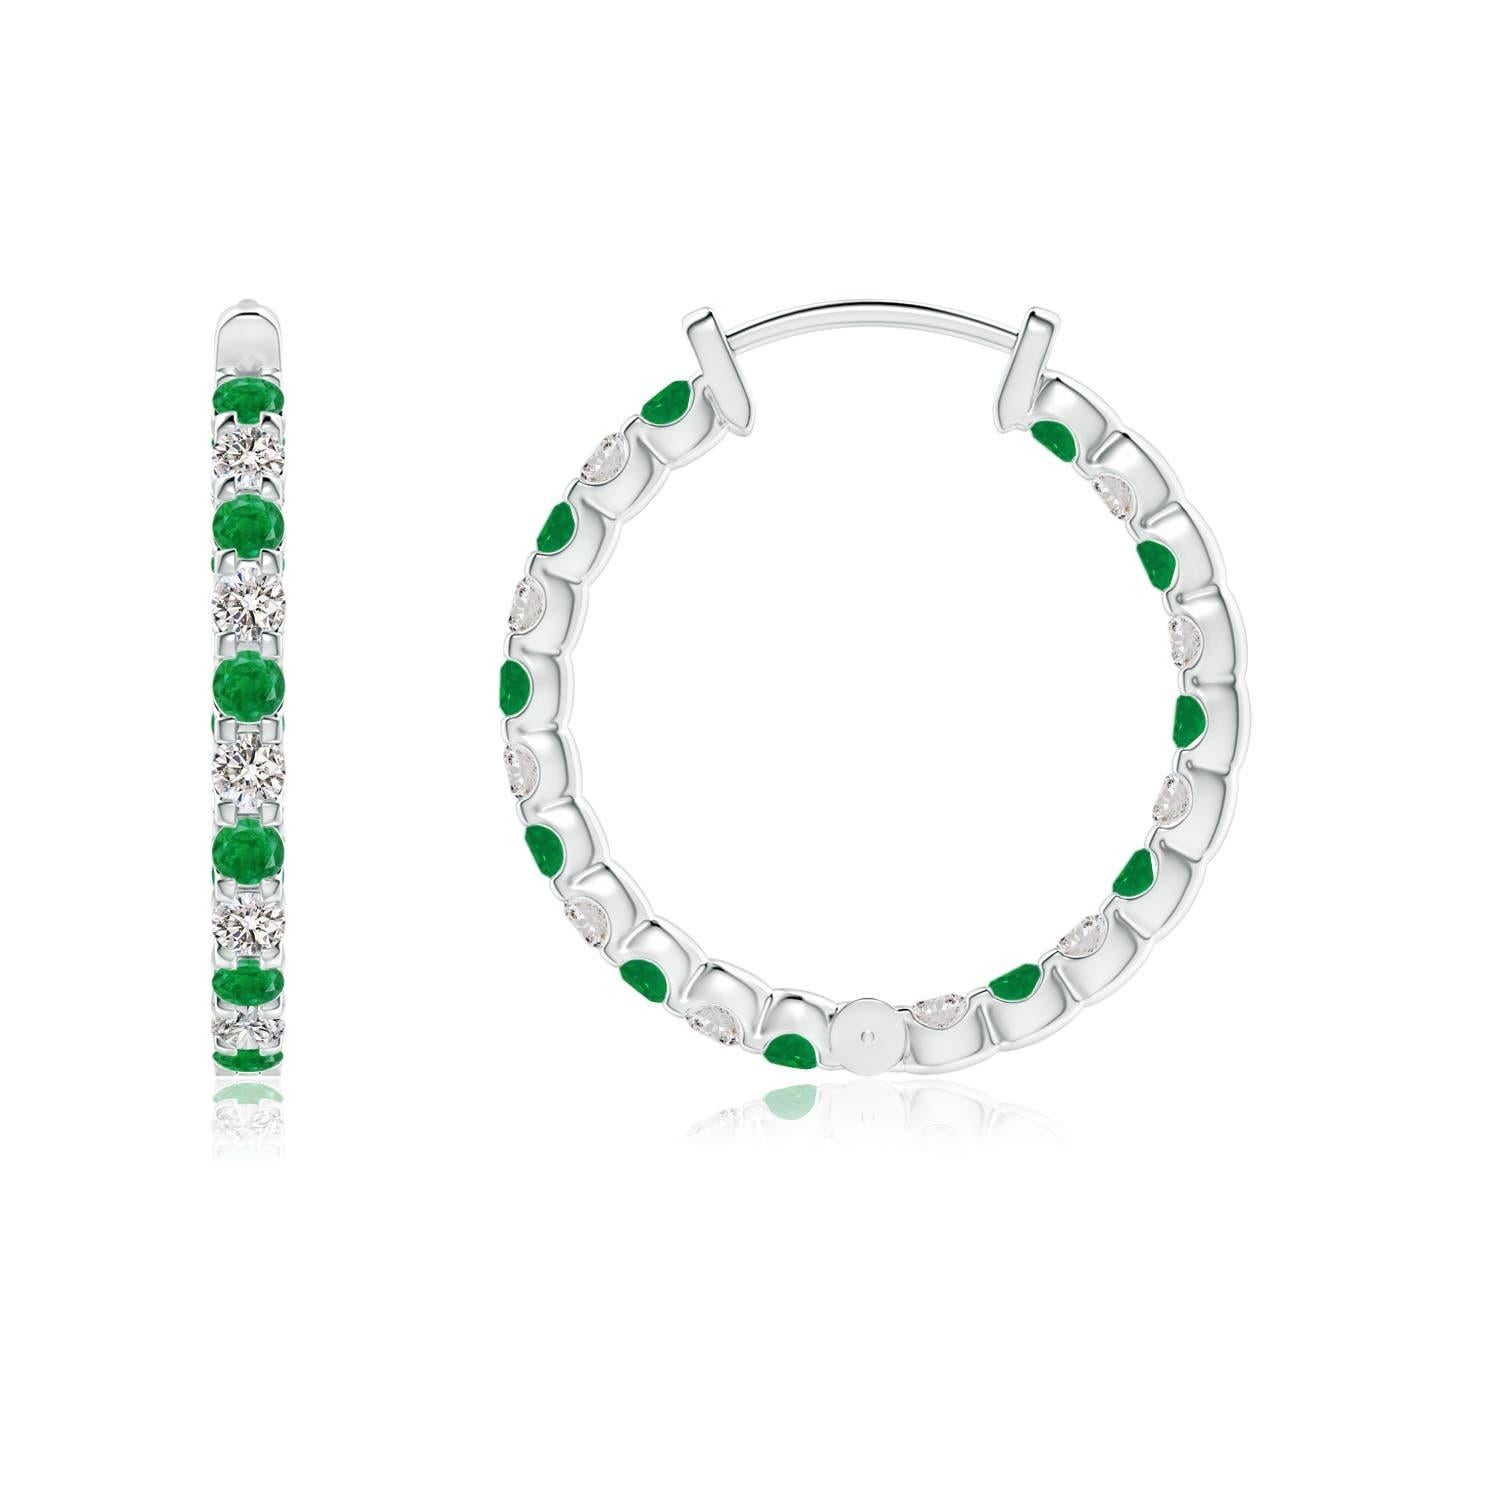 Ces magnifiques boucles d'oreilles sont composées d'émeraudes vertes et de diamants brillants, montés en alternance dans des montures à griffes. Les pierres scintillantes sont embellies à l'extérieur et à l'intérieur de ces anneaux en platine,